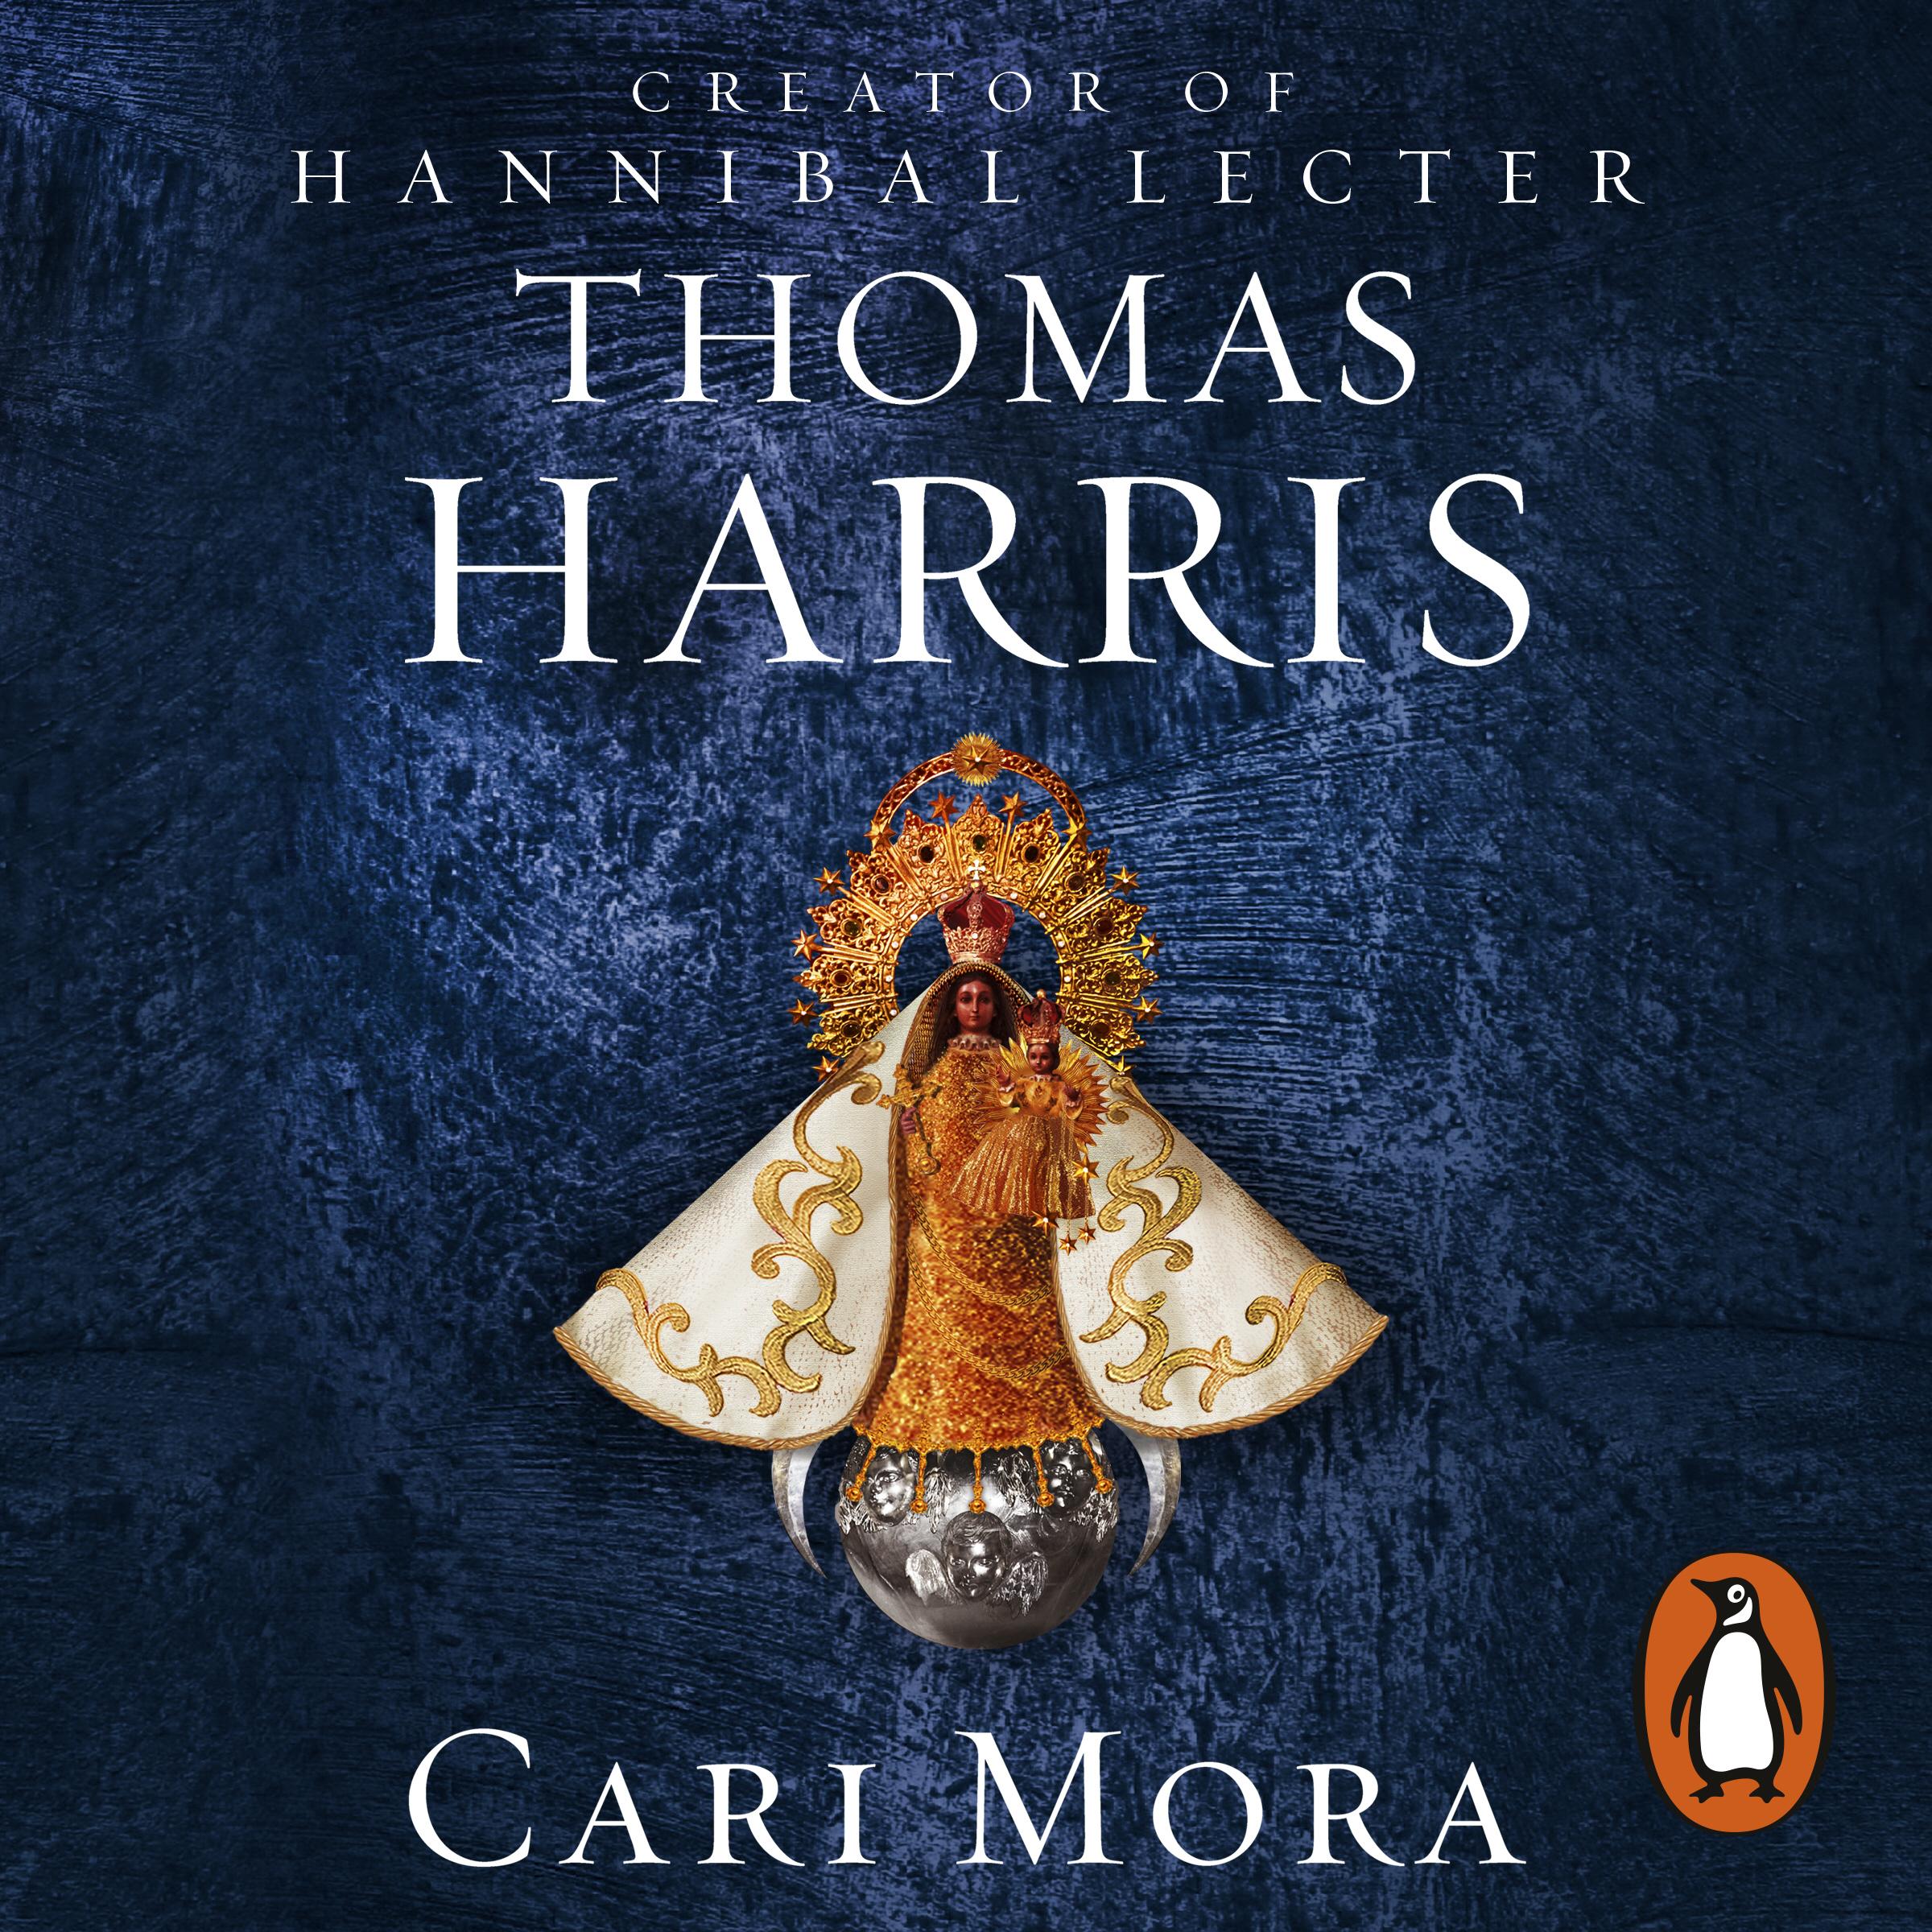 Cari Mora - Thomas Harris